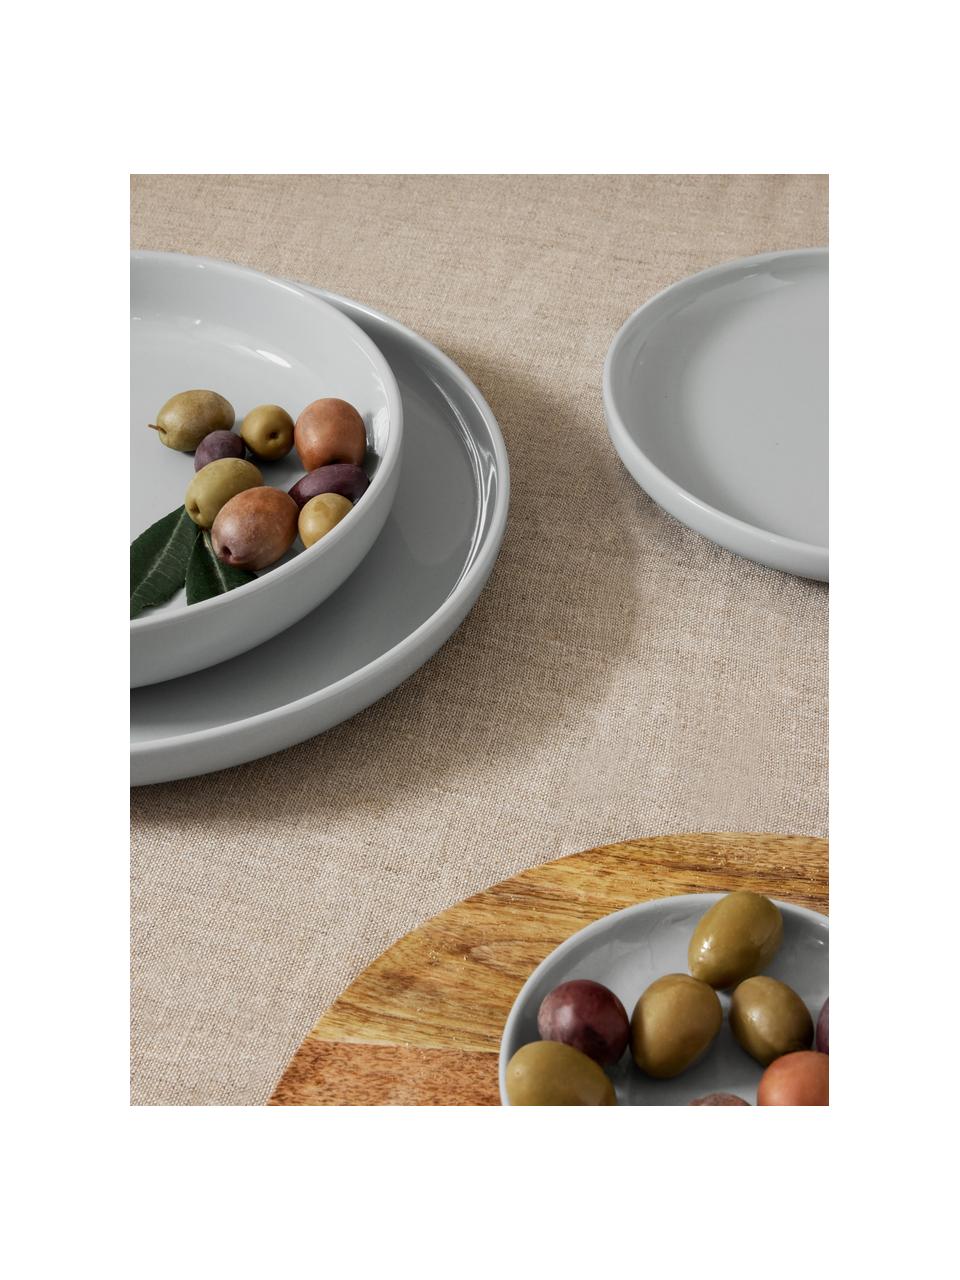 Service de table 12 pièces en grès pour 6 personnes avec assiettes et bols  - Service de vaisselle moderne en porcelaine colorée réactive - Assiettes à  salade, bols à céréales, bols à